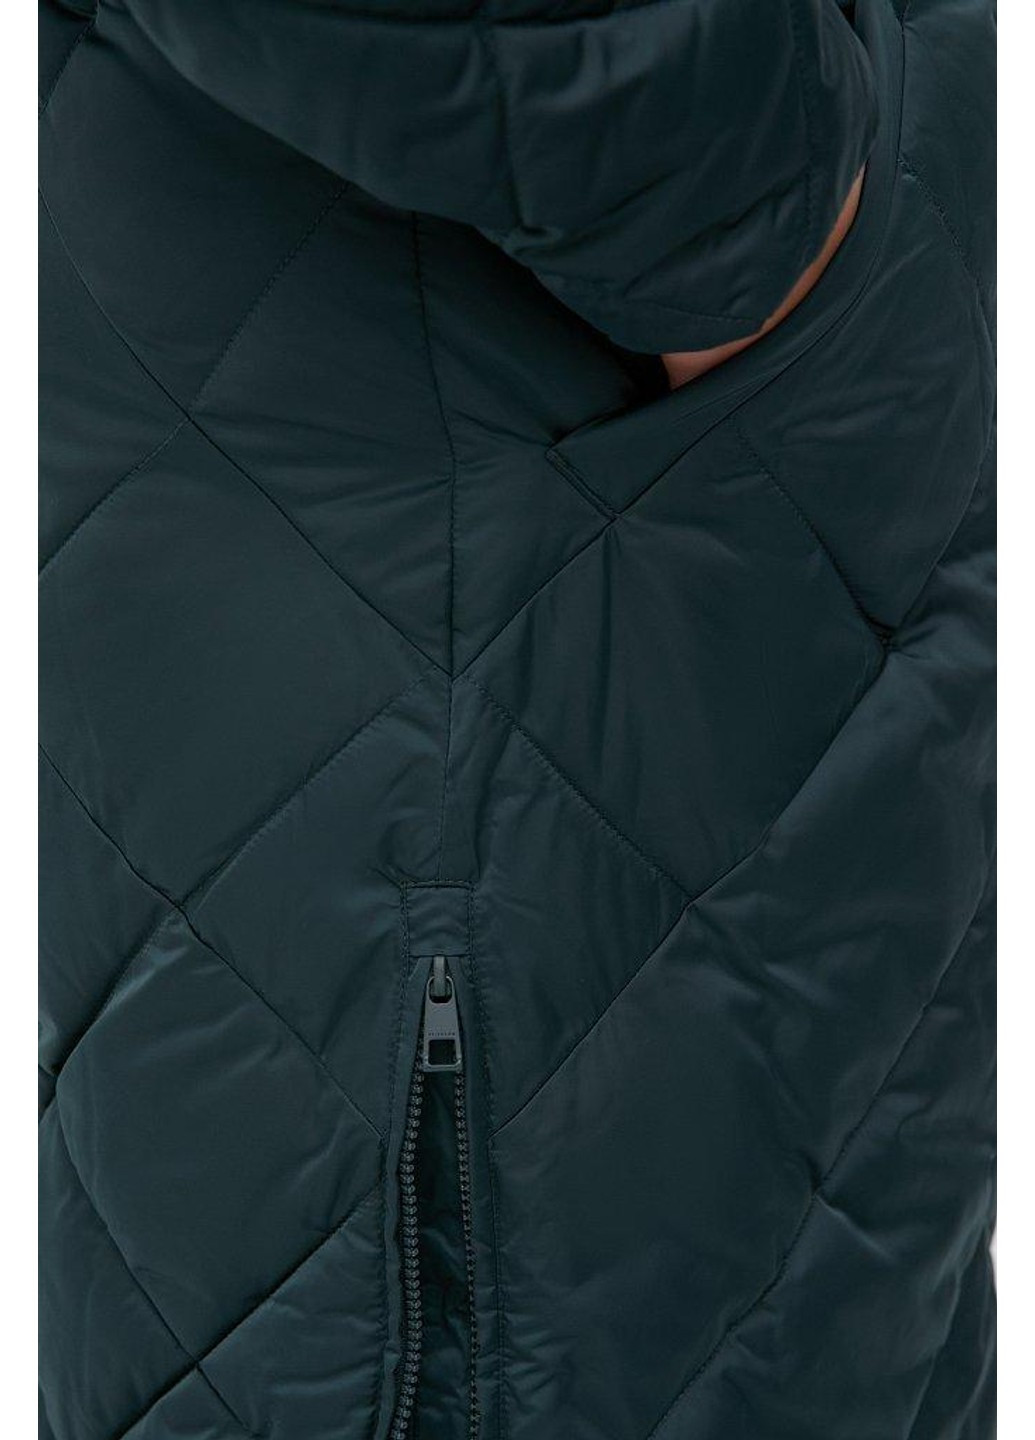 Зеленая зимняя куртка fwb160130-530 Finn Flare